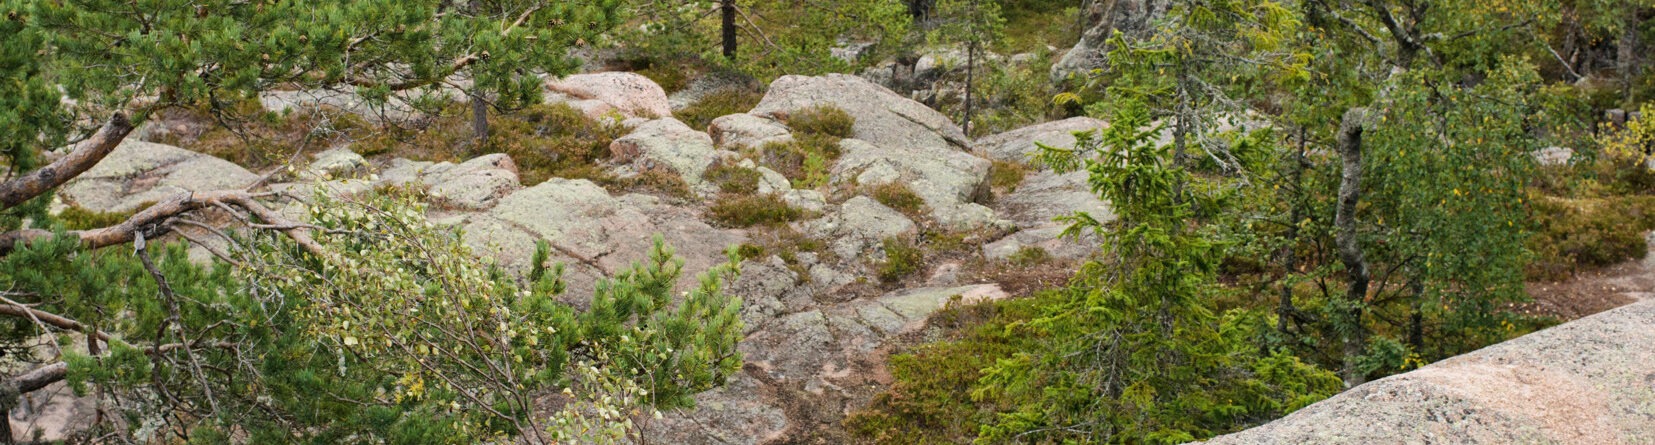 Skuleskogen National Park